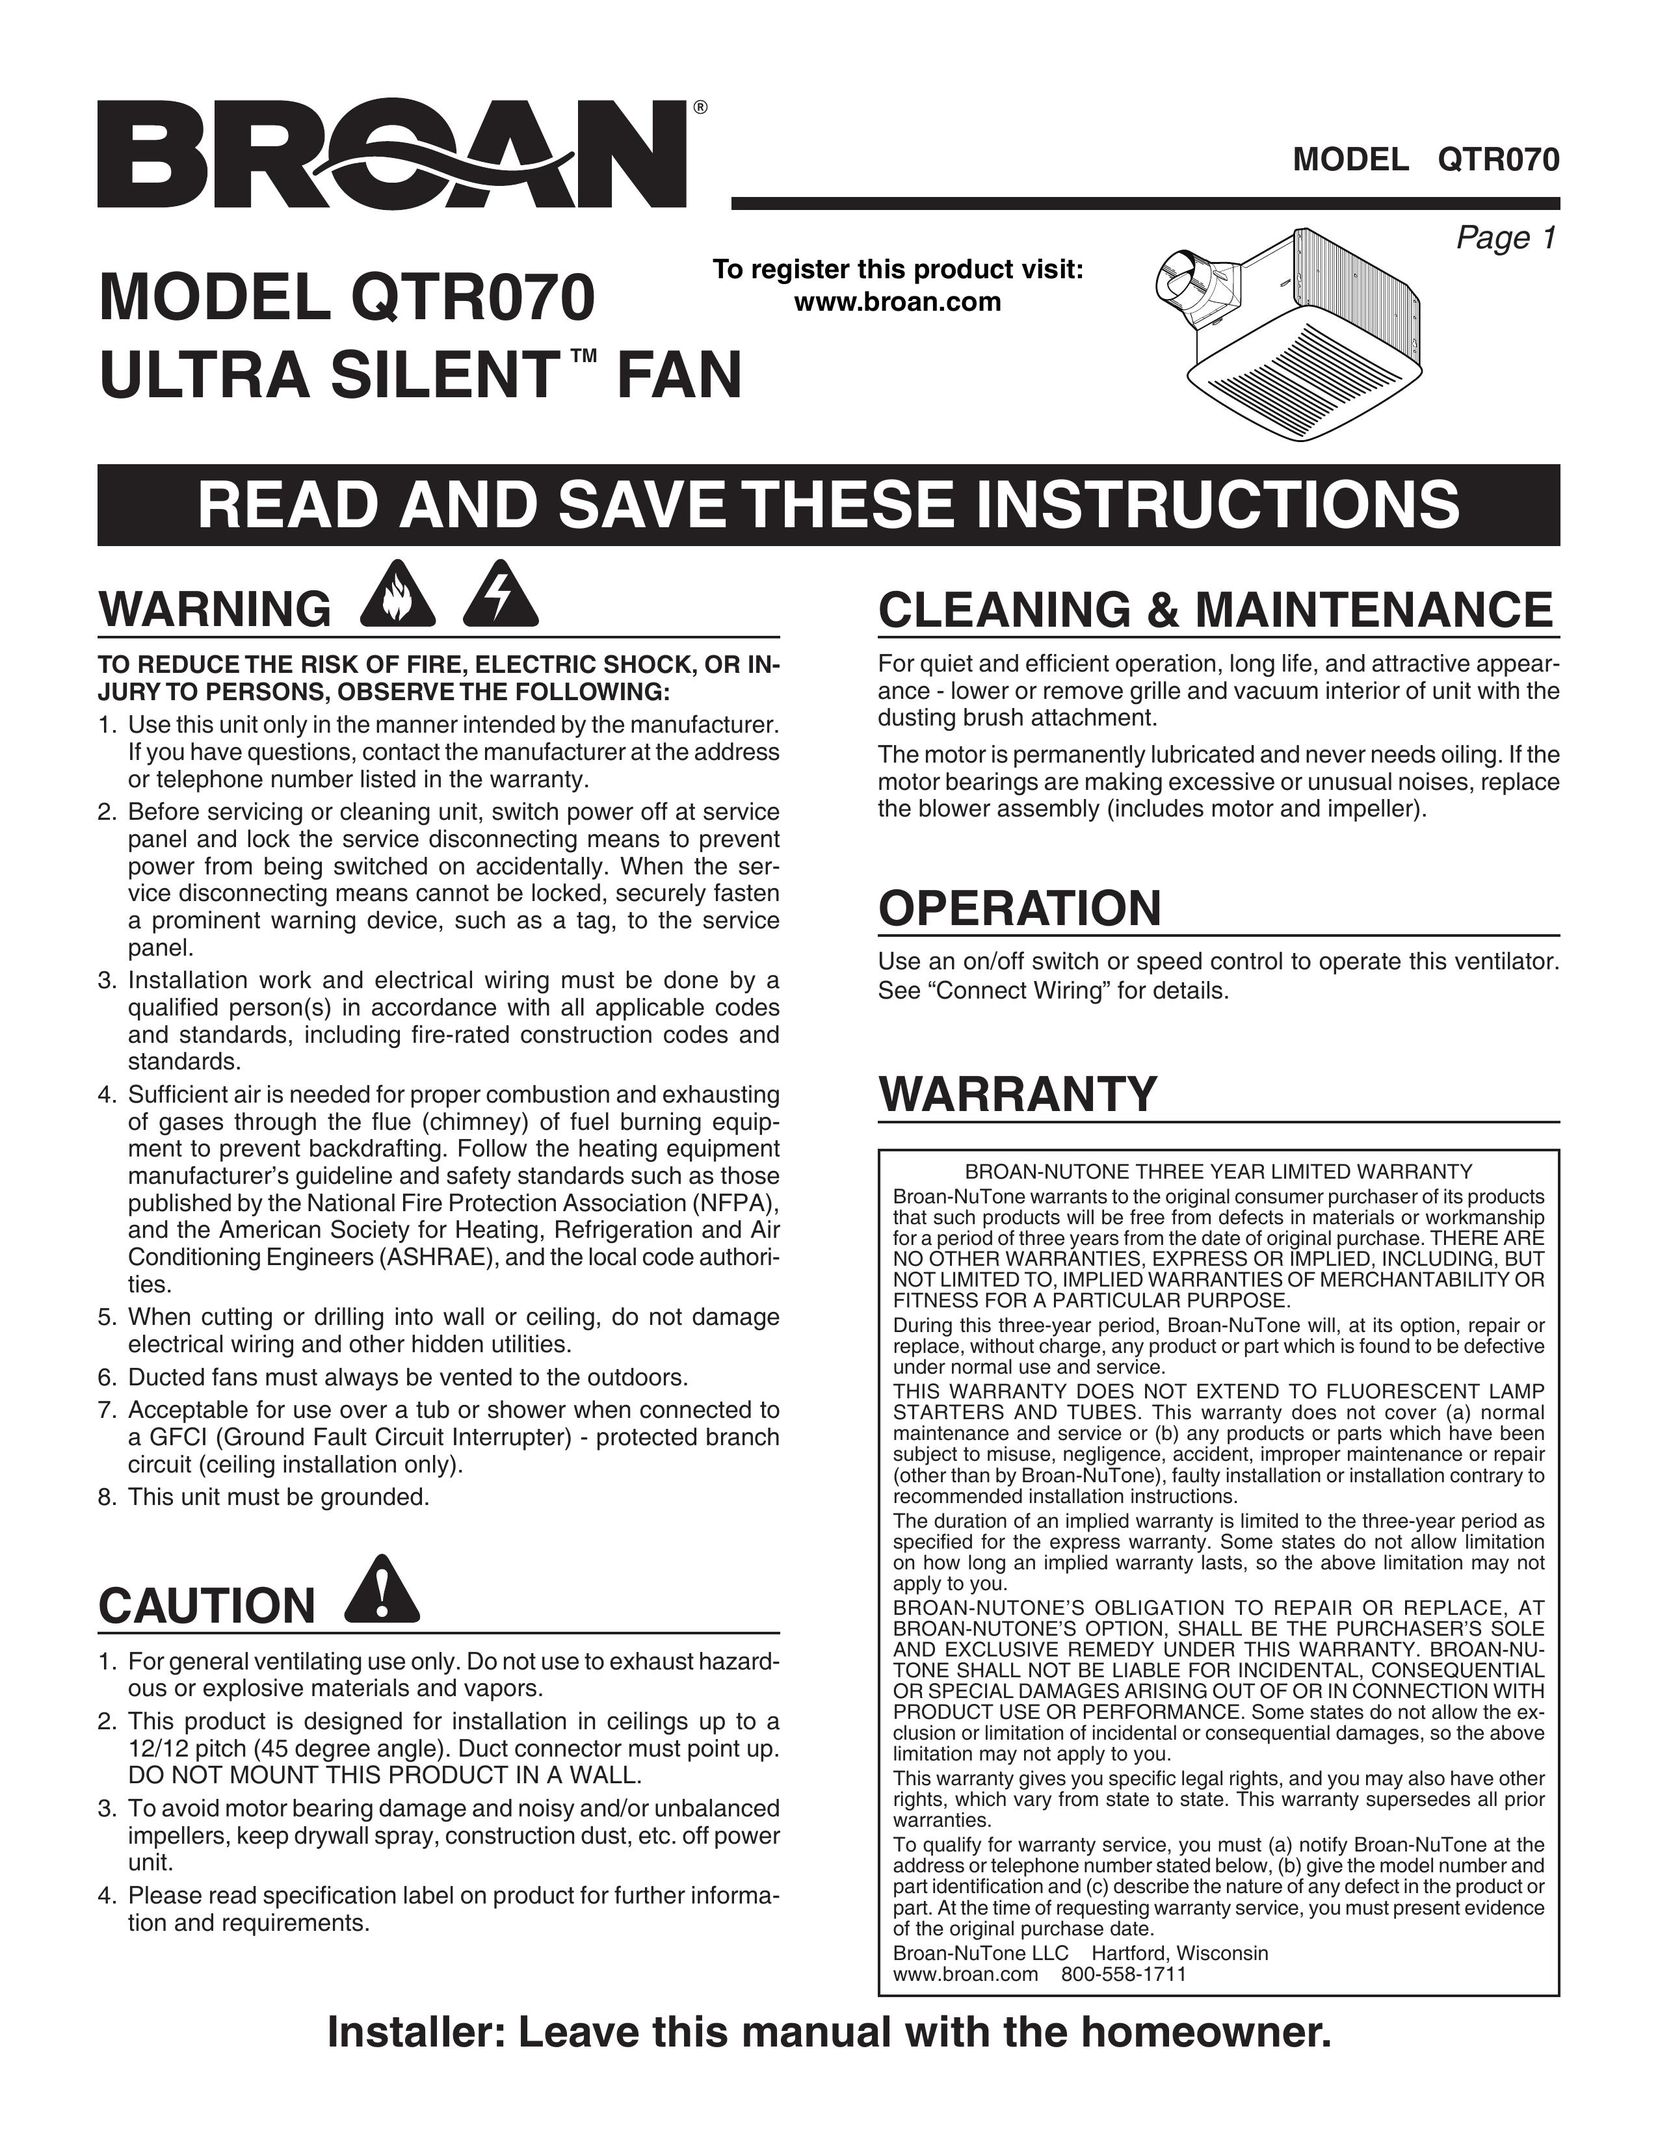 Broan QTR070 Fan User Manual